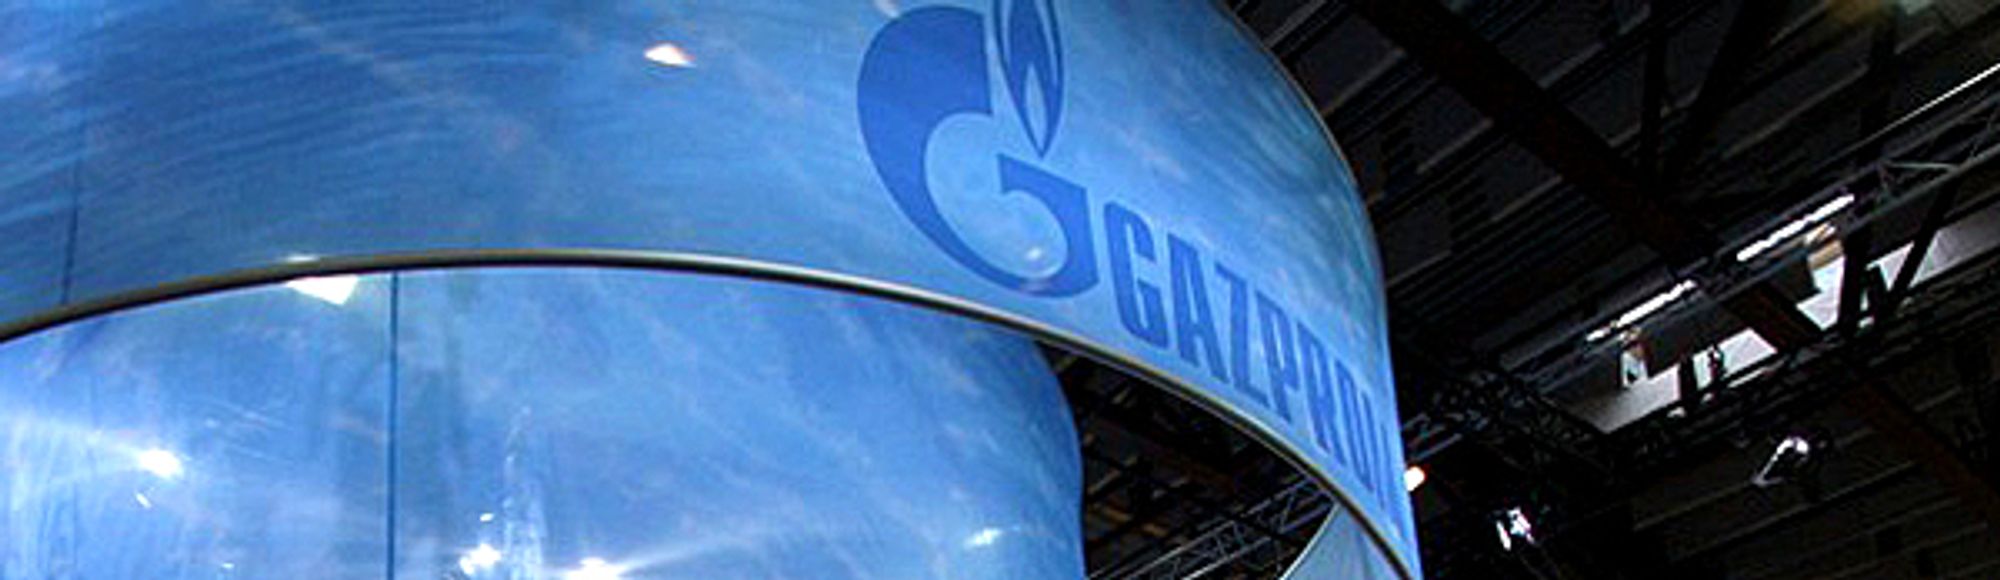 Energigiganten Gazprom har tirsdag morgen gjenåpnet gasskranene for forsyning til Europa via Ukraina.